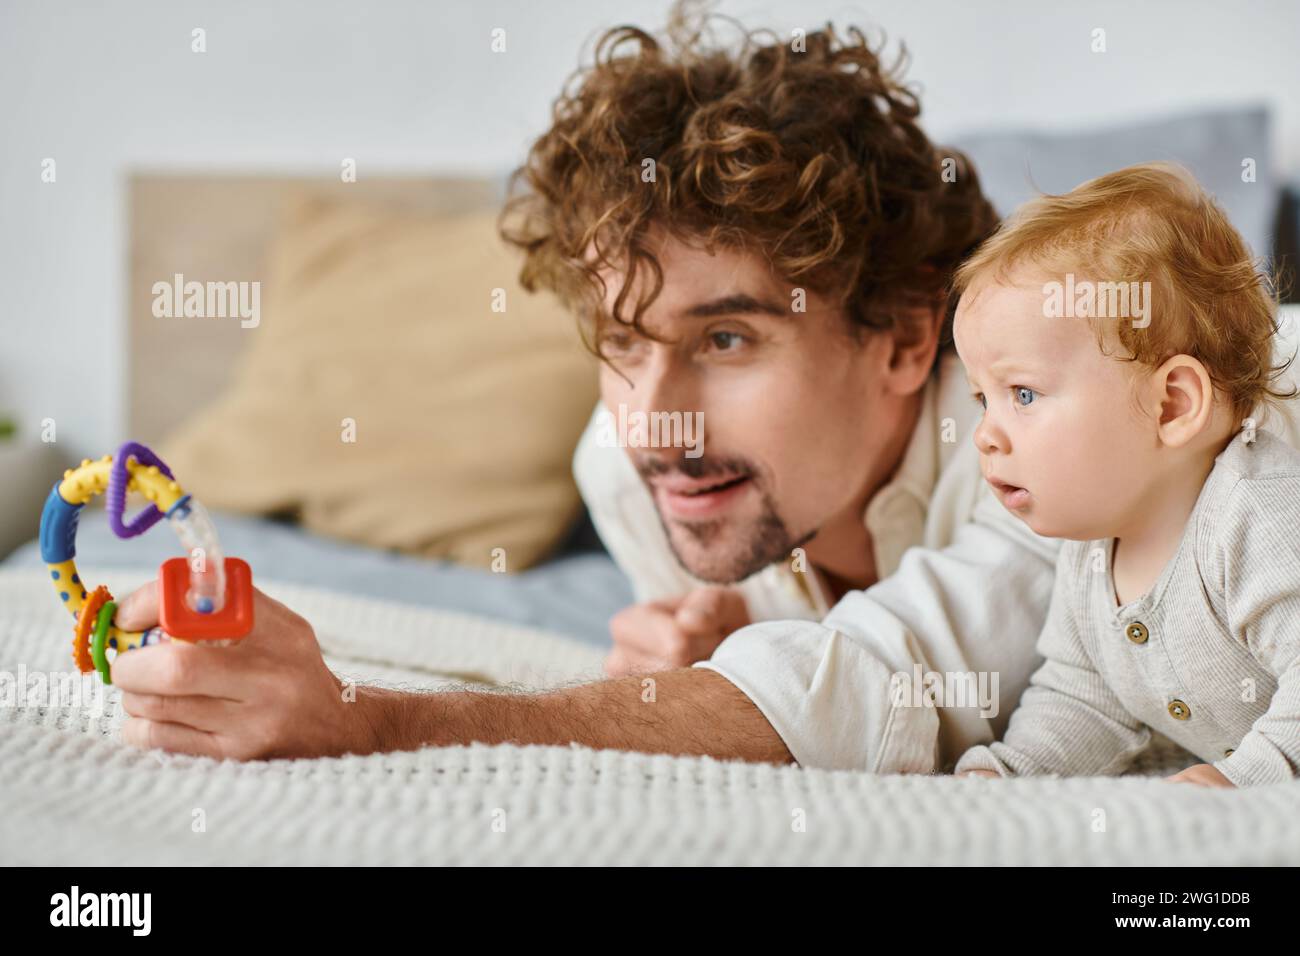 Alleinerziehender Vater und kleiner Junge, fasziniert von farbenfroher Rassel im Schlafzimmer, Bindung zwischen Eltern und Kind Stockfoto